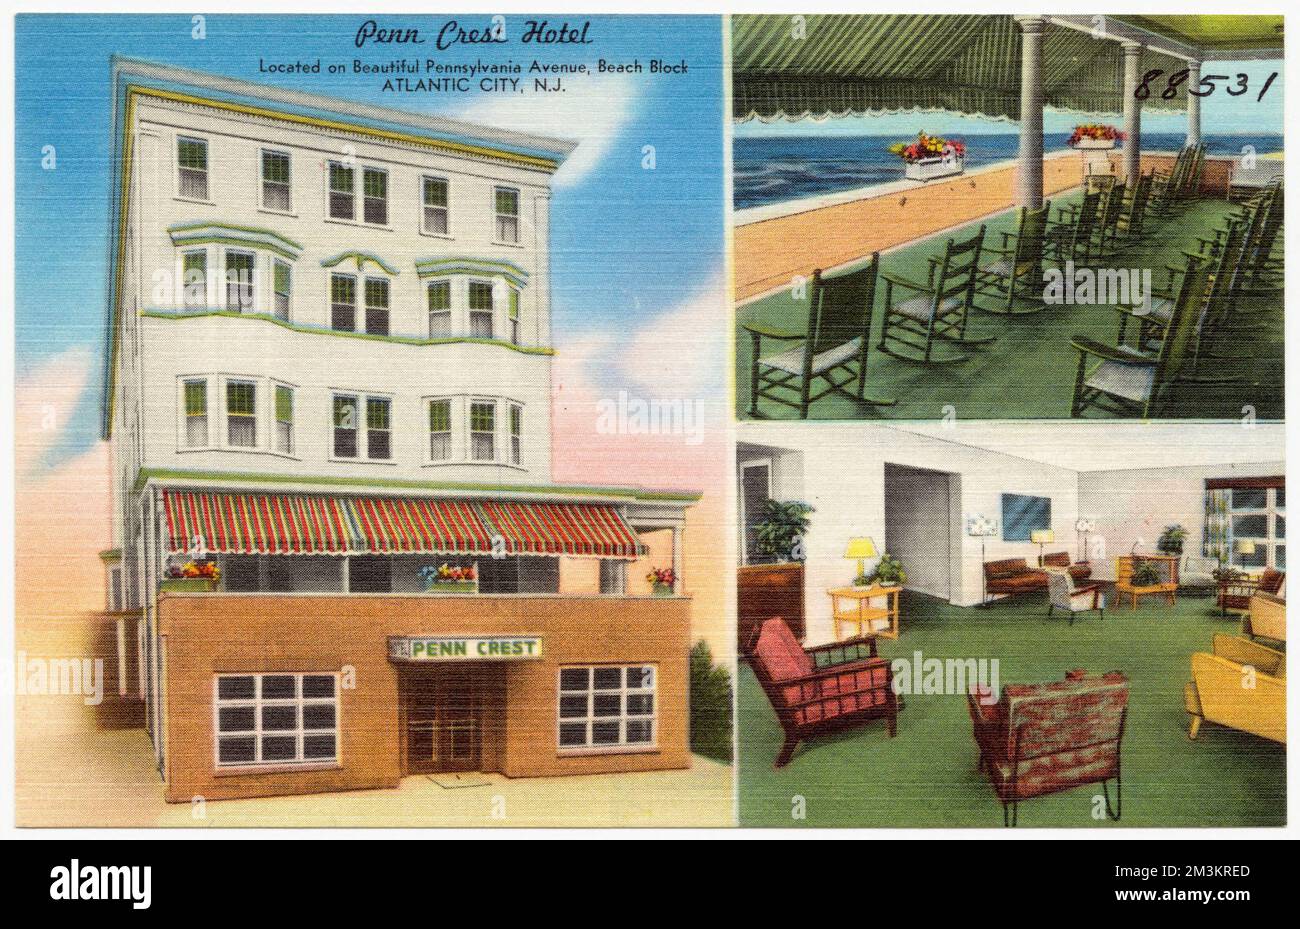 Penn Crest Hotel, ubicado en la hermosa Pennsylvania Avenue, Beach Block, Atlantic City, N.J. , Hoteles, Colección de los Hermanos Tichnor, postales de los Estados Unidos Foto de stock